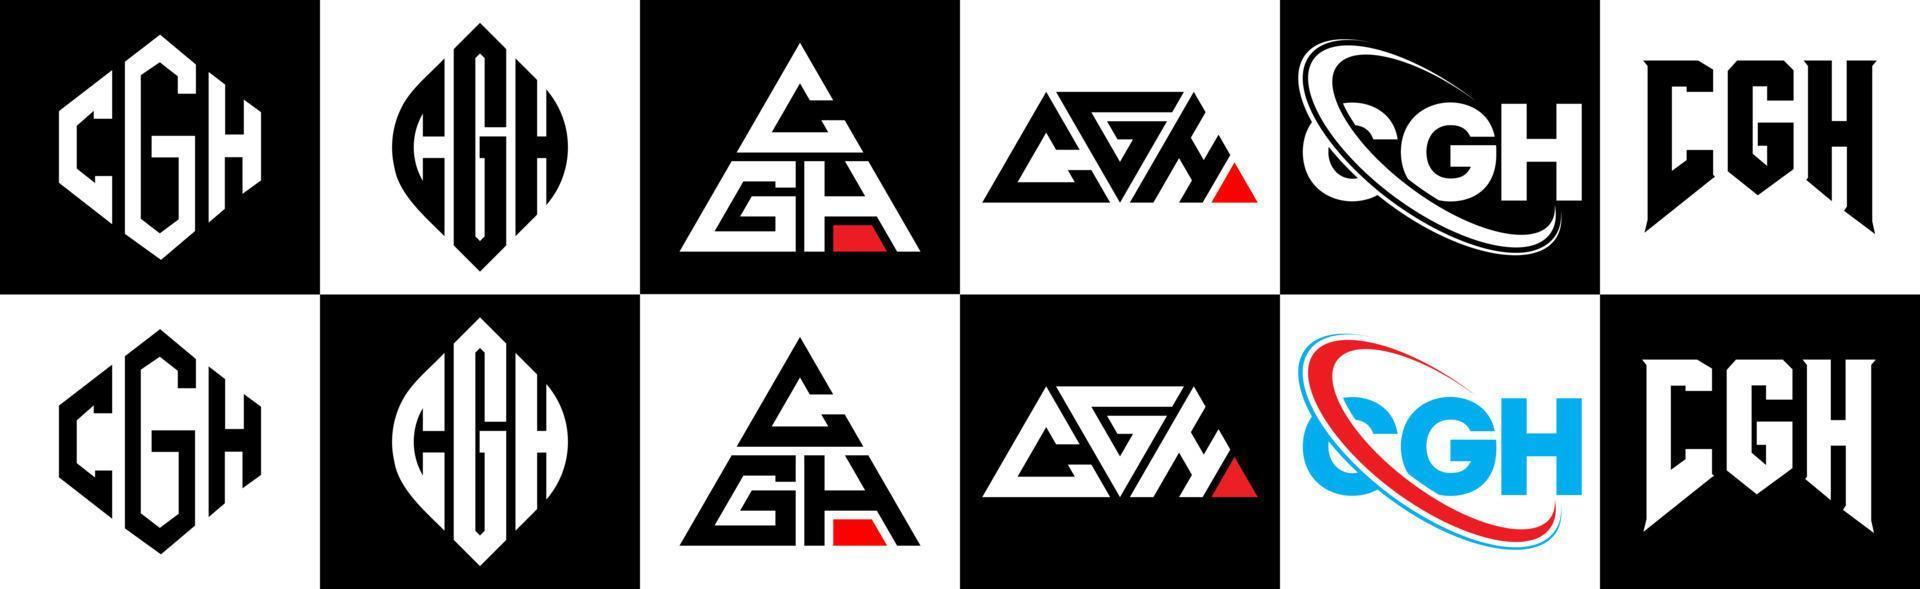 cgh-Buchstaben-Logo-Design in sechs Stilen. cgh polygon, kreis, dreieck, sechseck, flacher und einfacher stil mit schwarz-weißem buchstabenlogo in einer zeichenfläche. cgh minimalistisches und klassisches Logo vektor